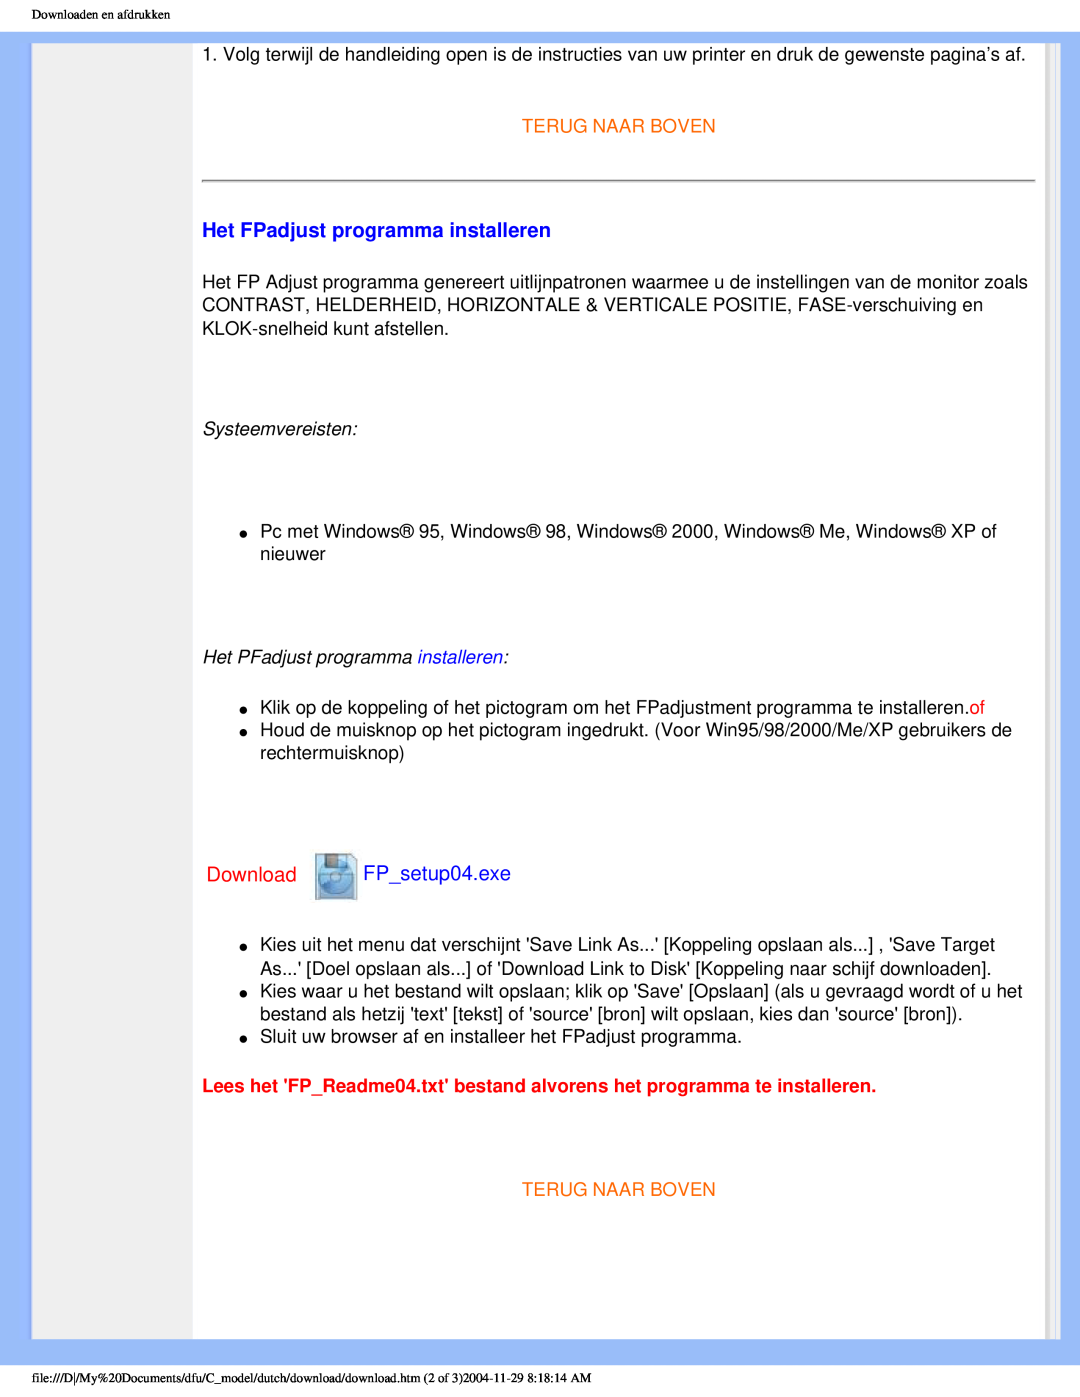 Philips 170C5 user manual Het FPadjust programma installeren, Download FPsetup04.exe, Terug Naar Boven 